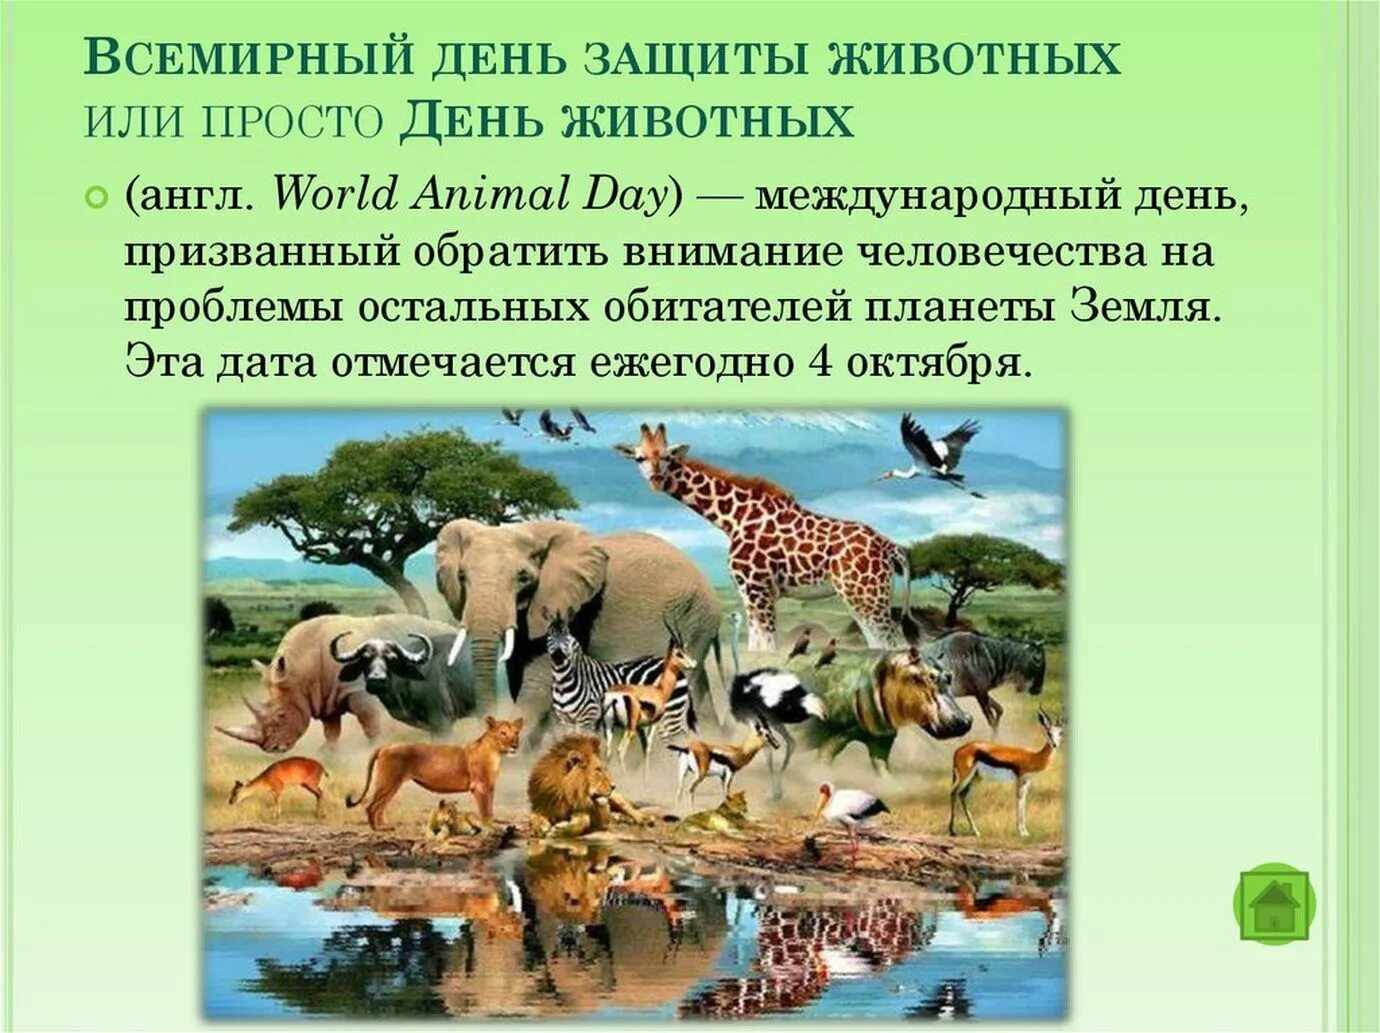 Картинки на Всемирный день животных 5 октября (9)